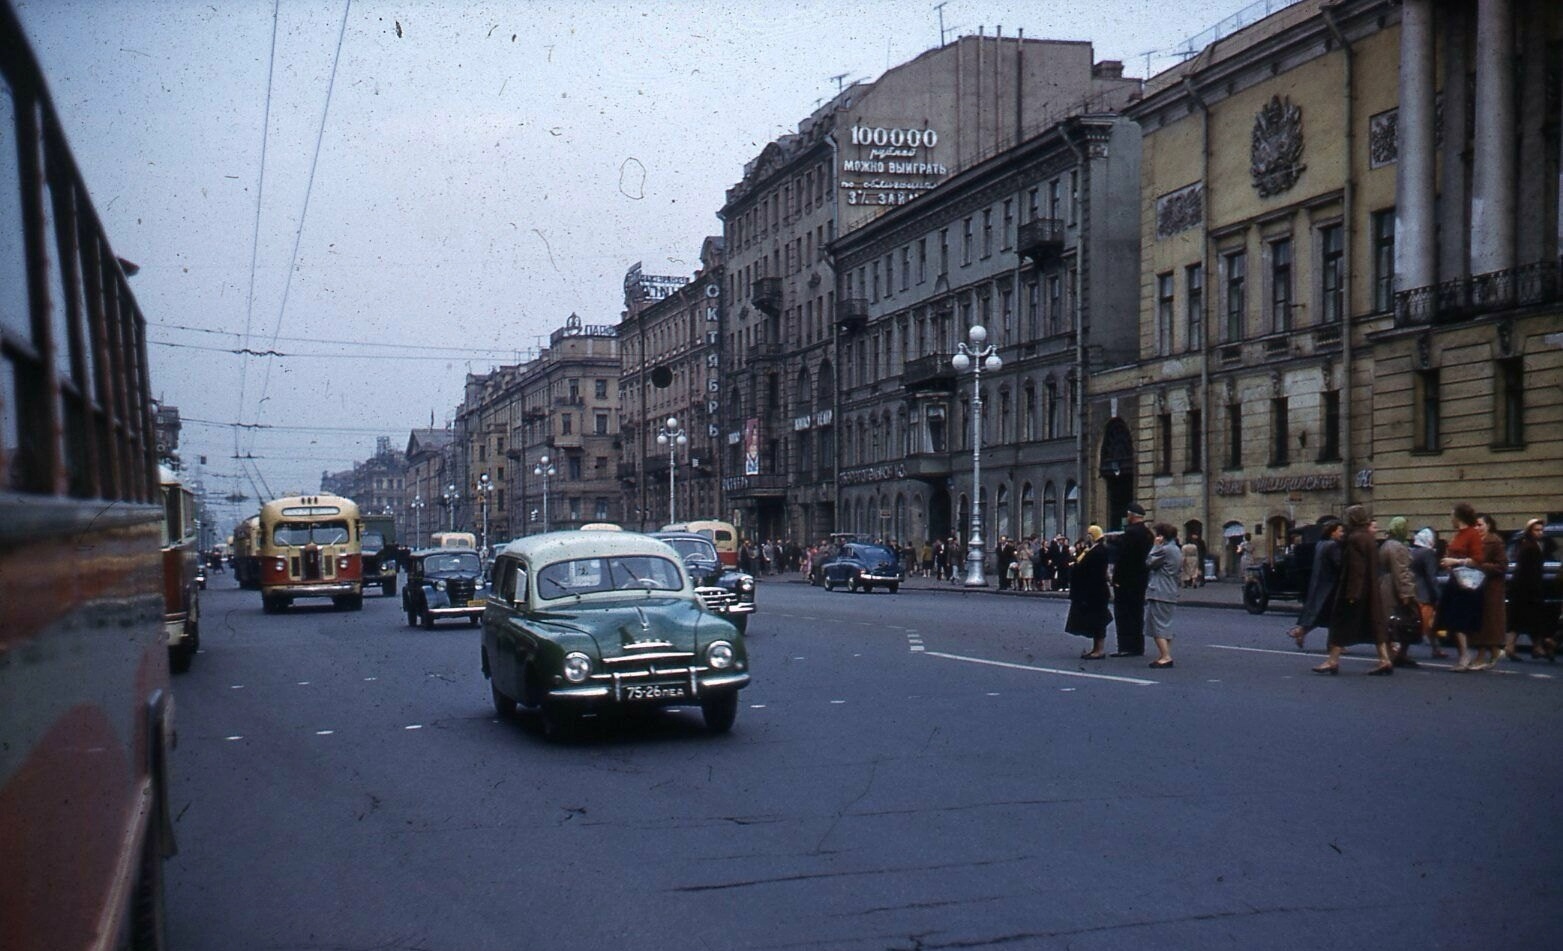 Невский проспект, 1960 год